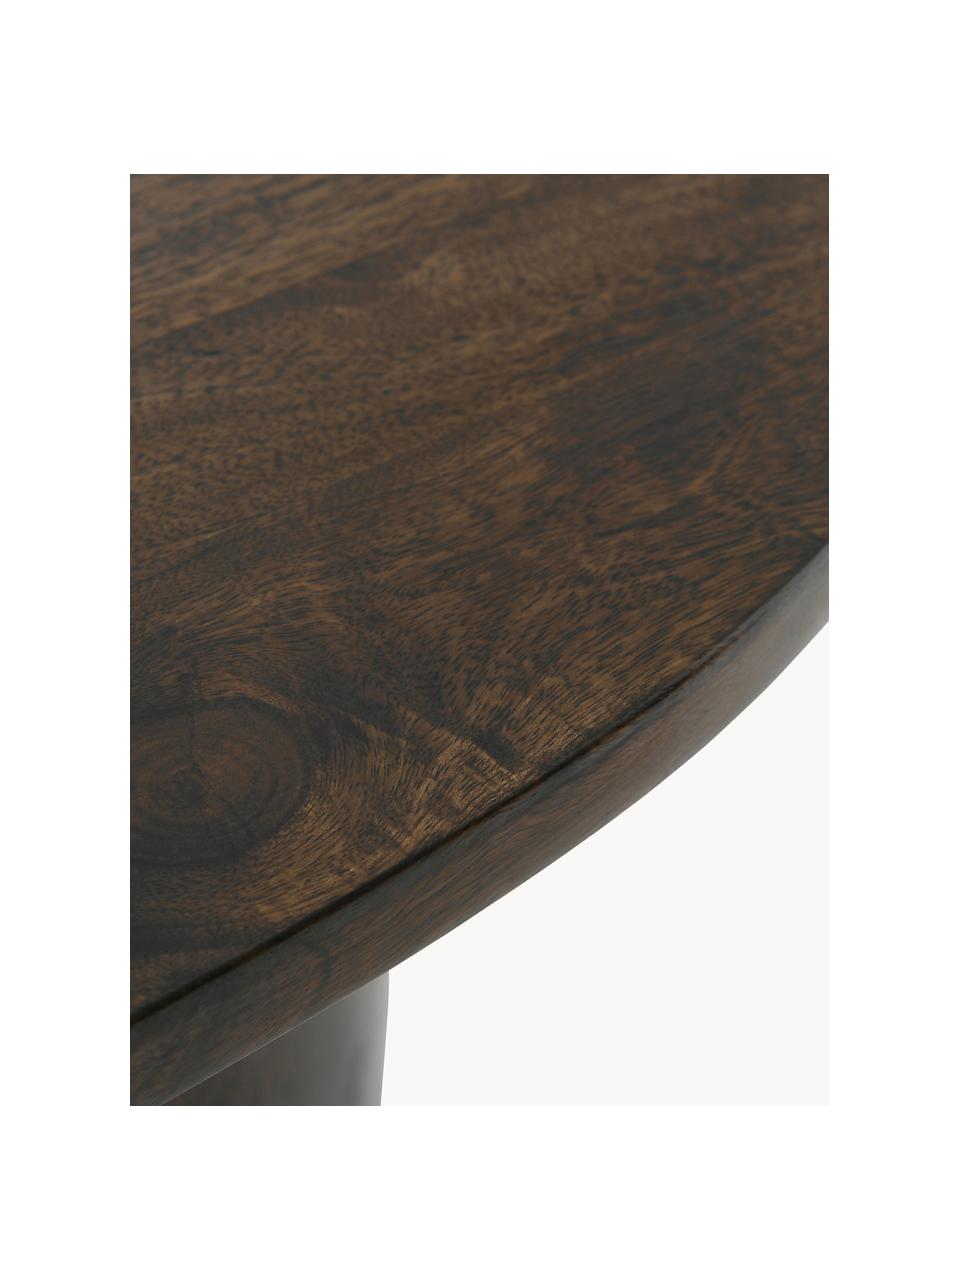 Tavolo ovale in legno di mango Grow, Legno di mango verniciato, Legno di mango, opaco verniciato, Larg. 200 x Prof. 90 cm